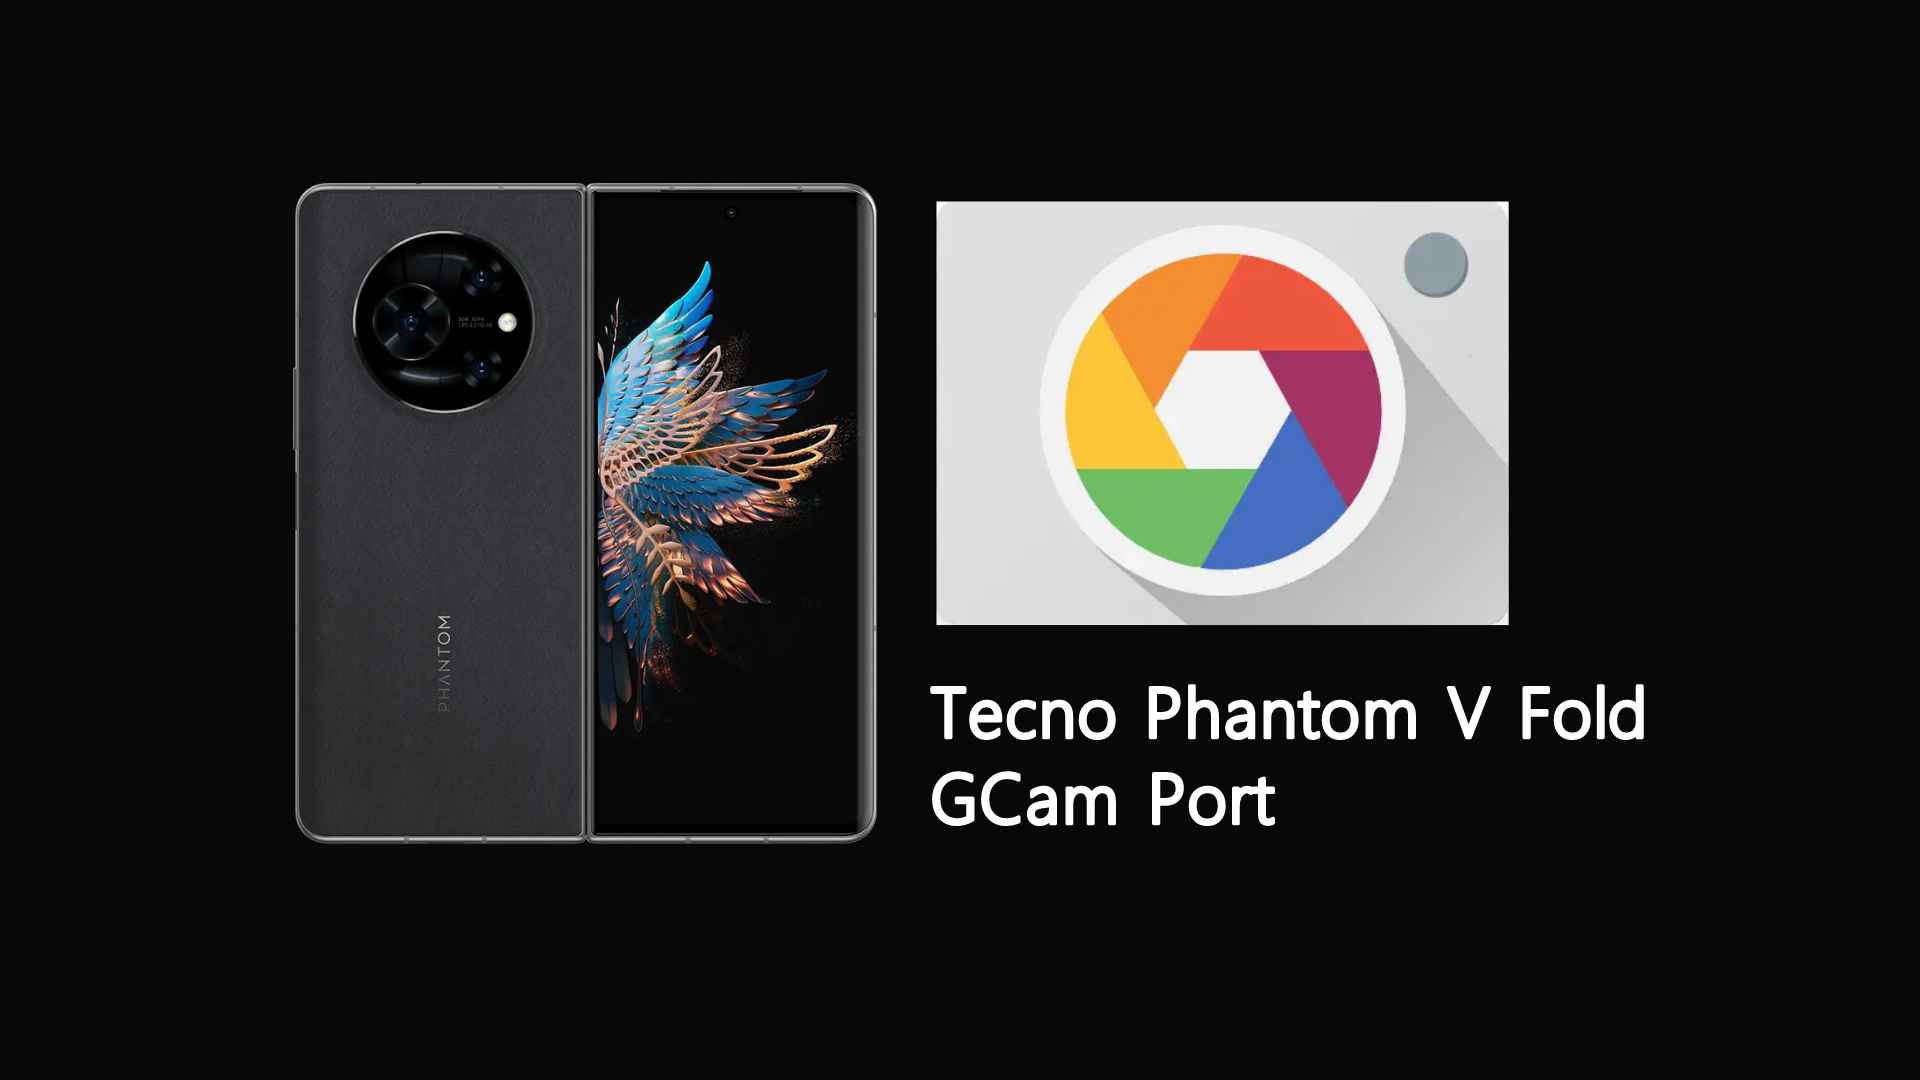 Tecno Phantom V Fold GCam Port